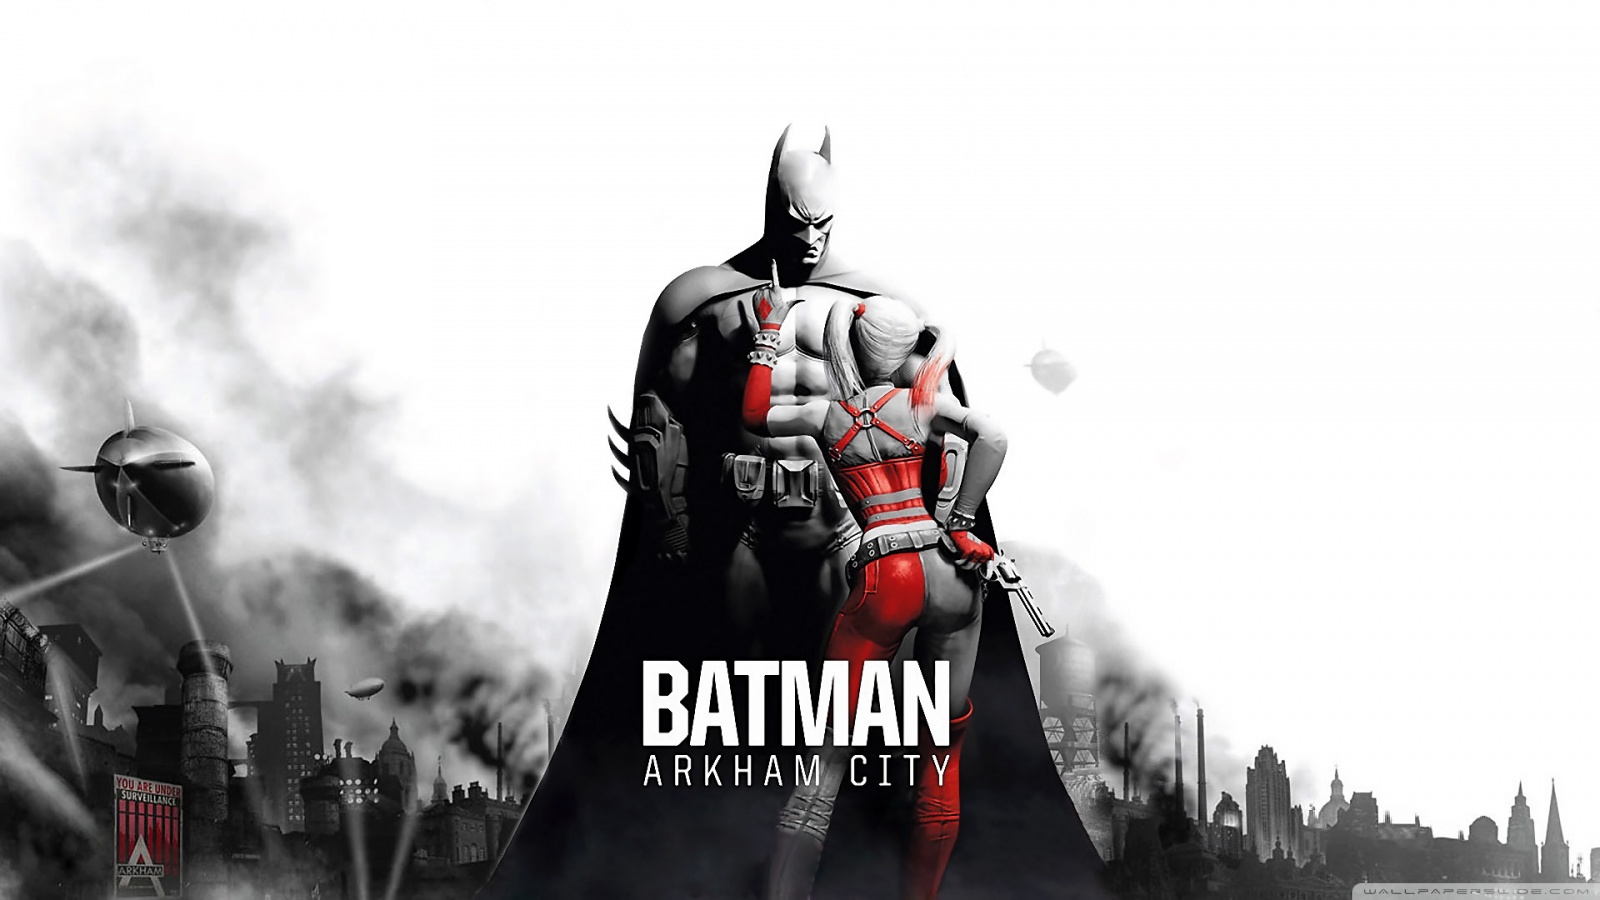 batman arkham city sfondo,personaggio fittizio,batman,supereroe,action figure,supercattivo